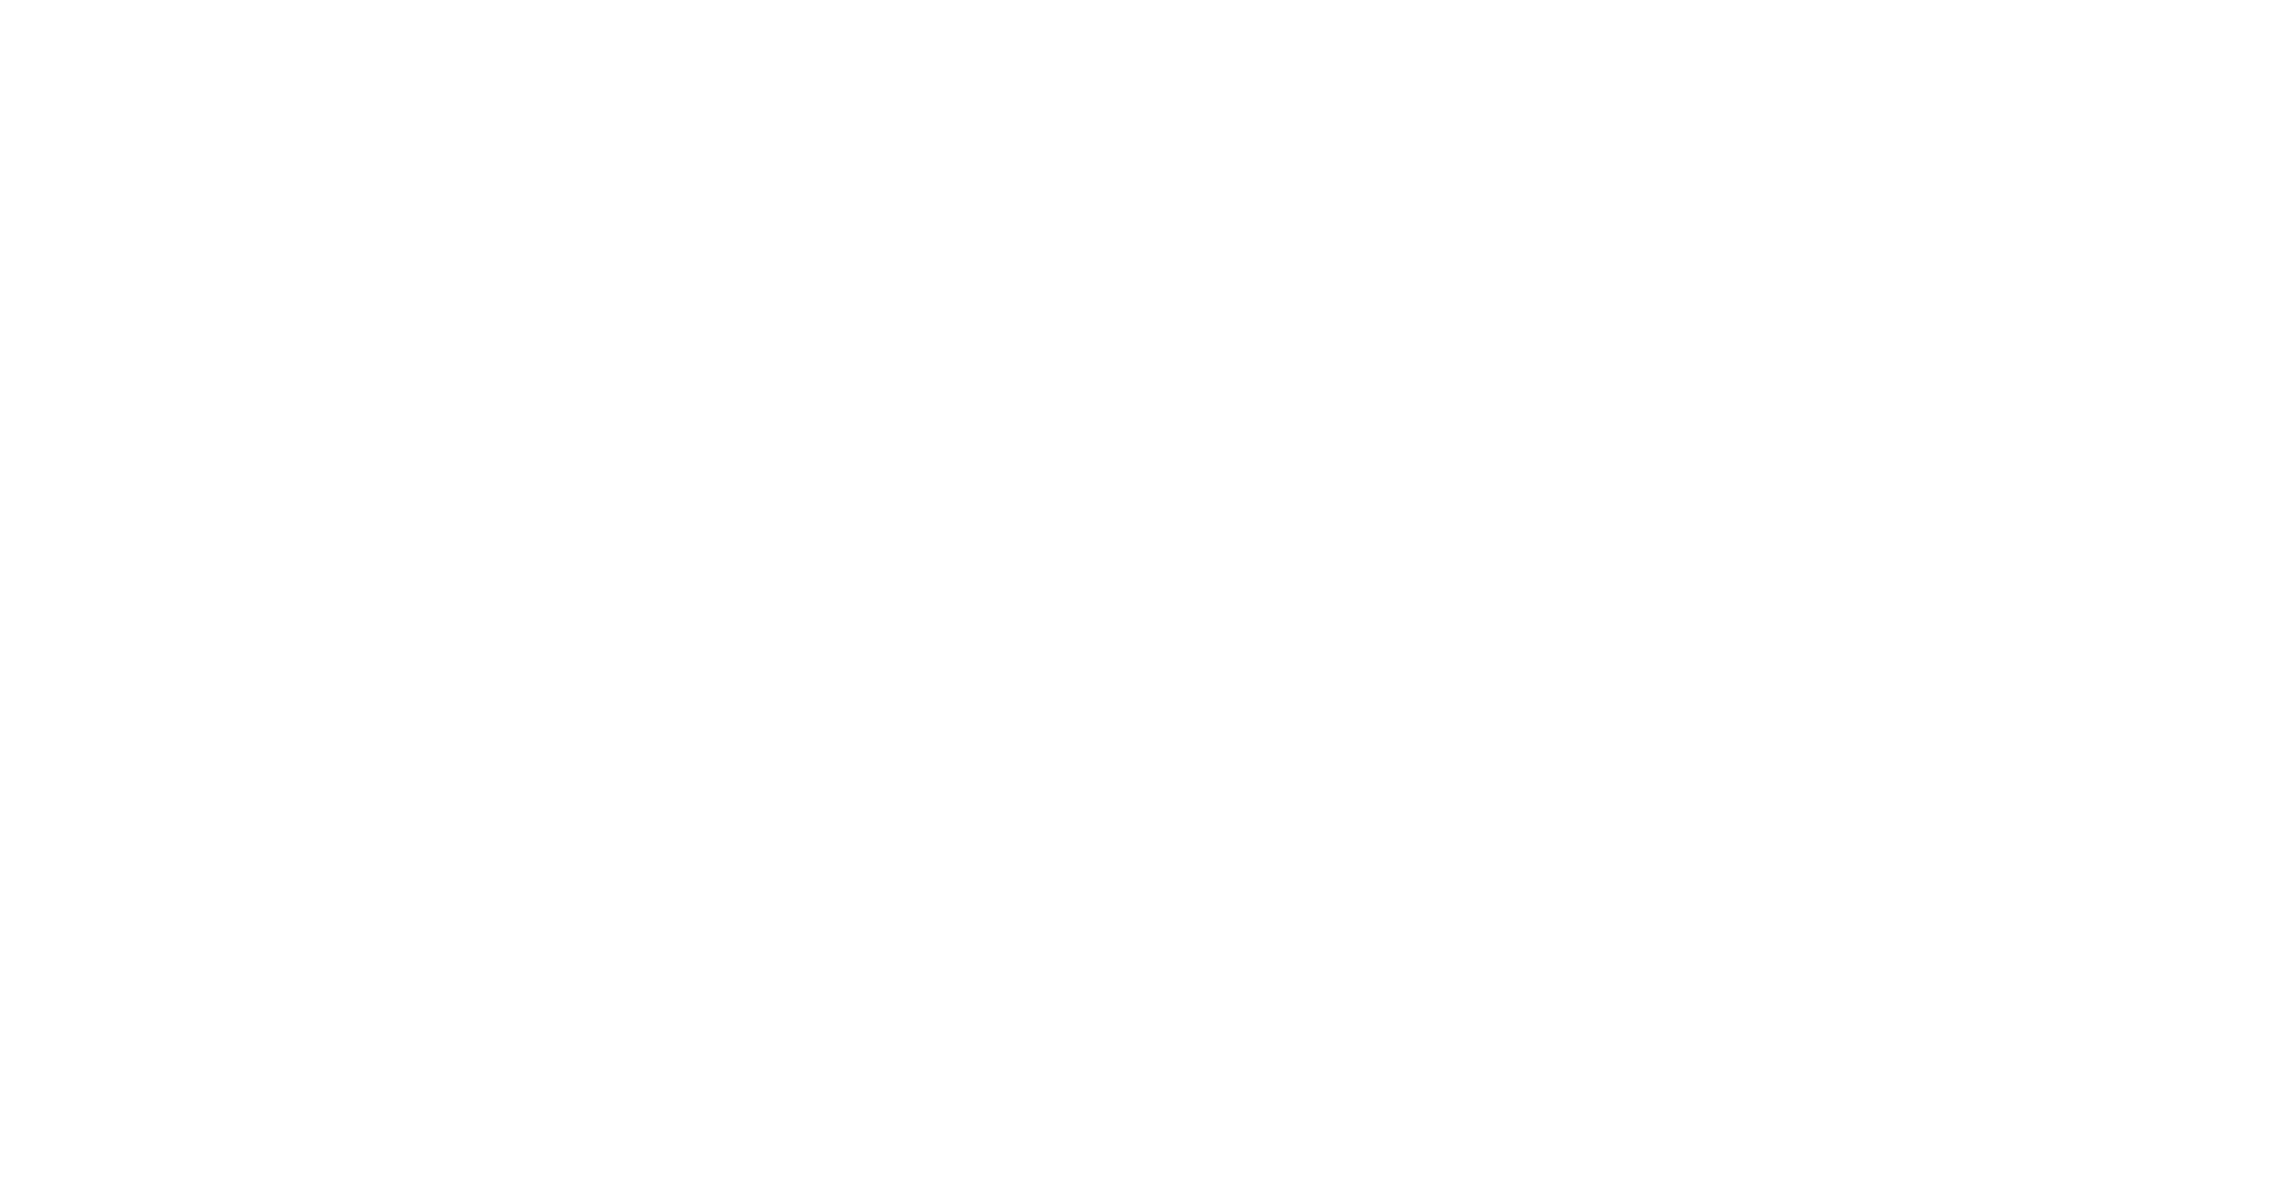 Live like a local